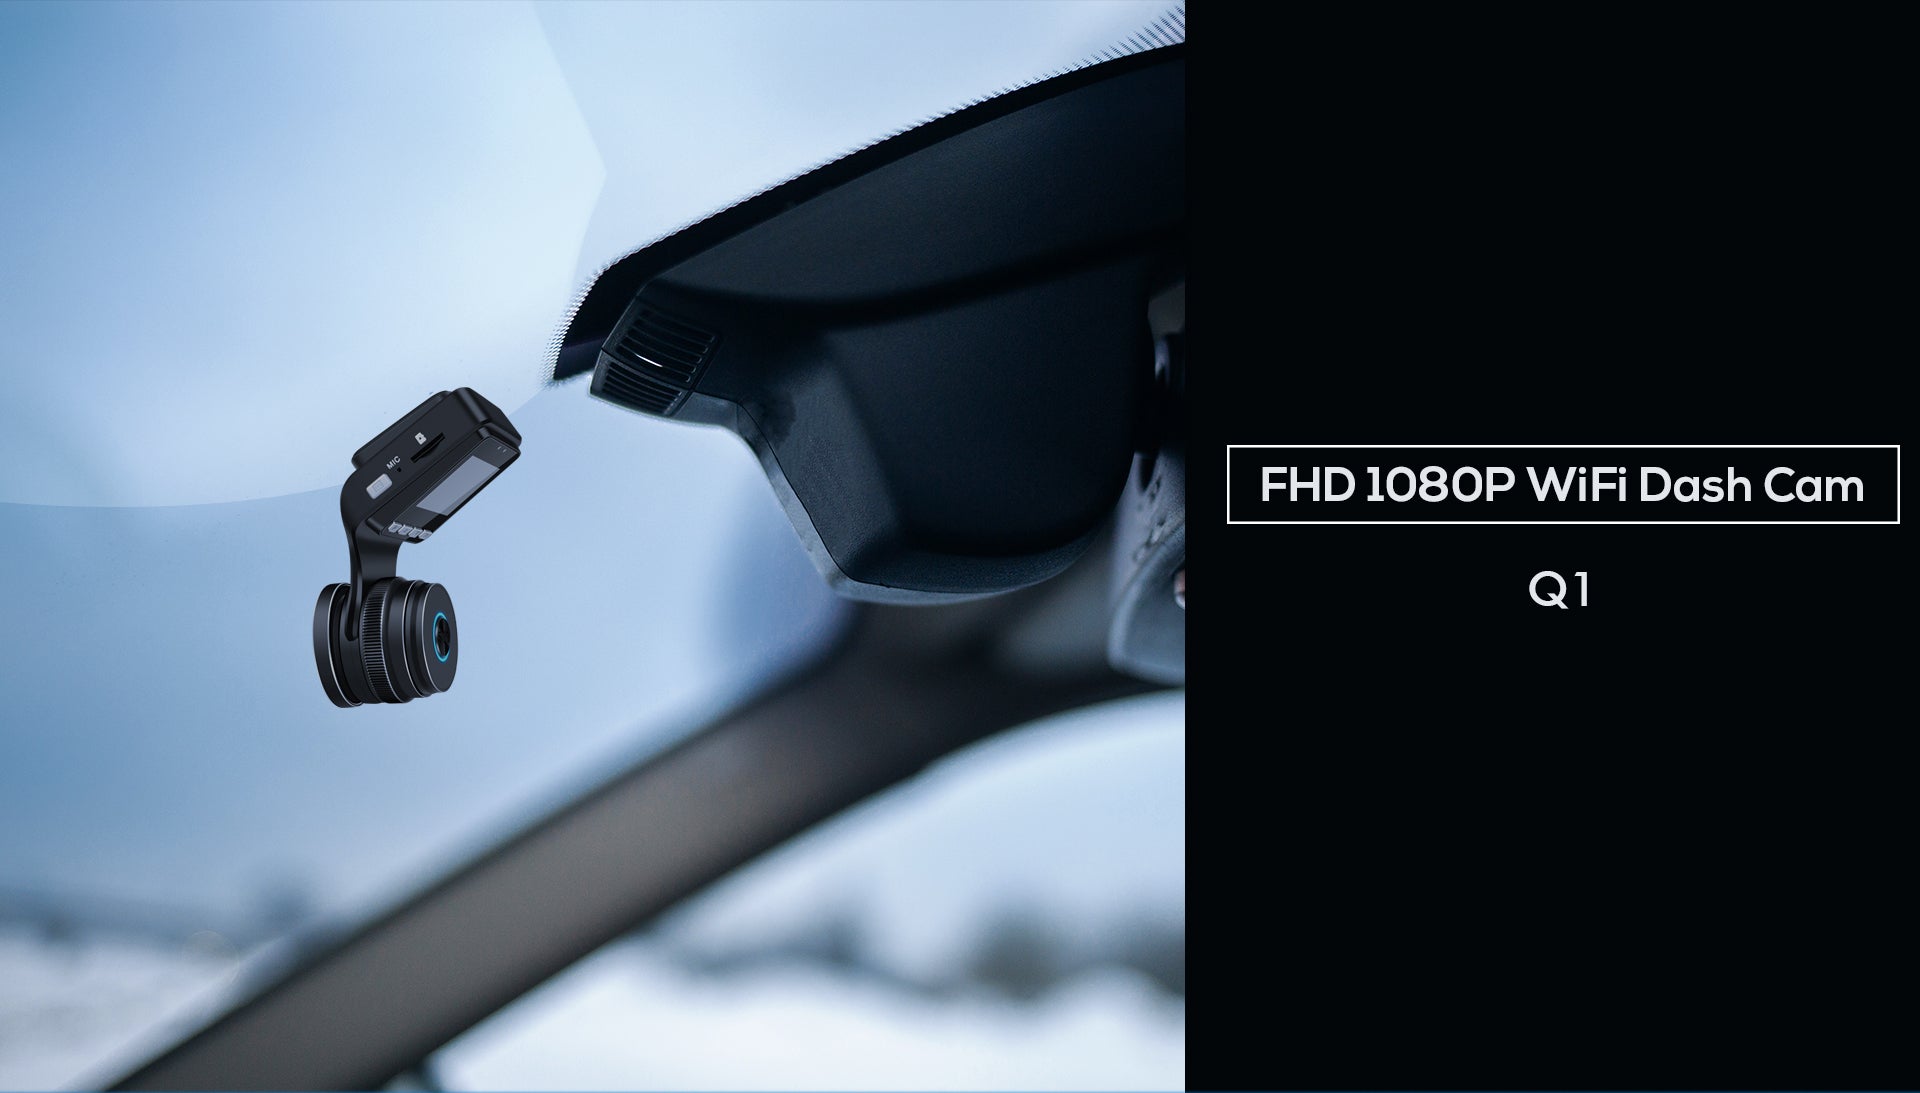 First look at the Peztio 1080p Wi-Fi dashcam. #Peztio #Dashcams #Tech  #Motoring - techbuzzireland